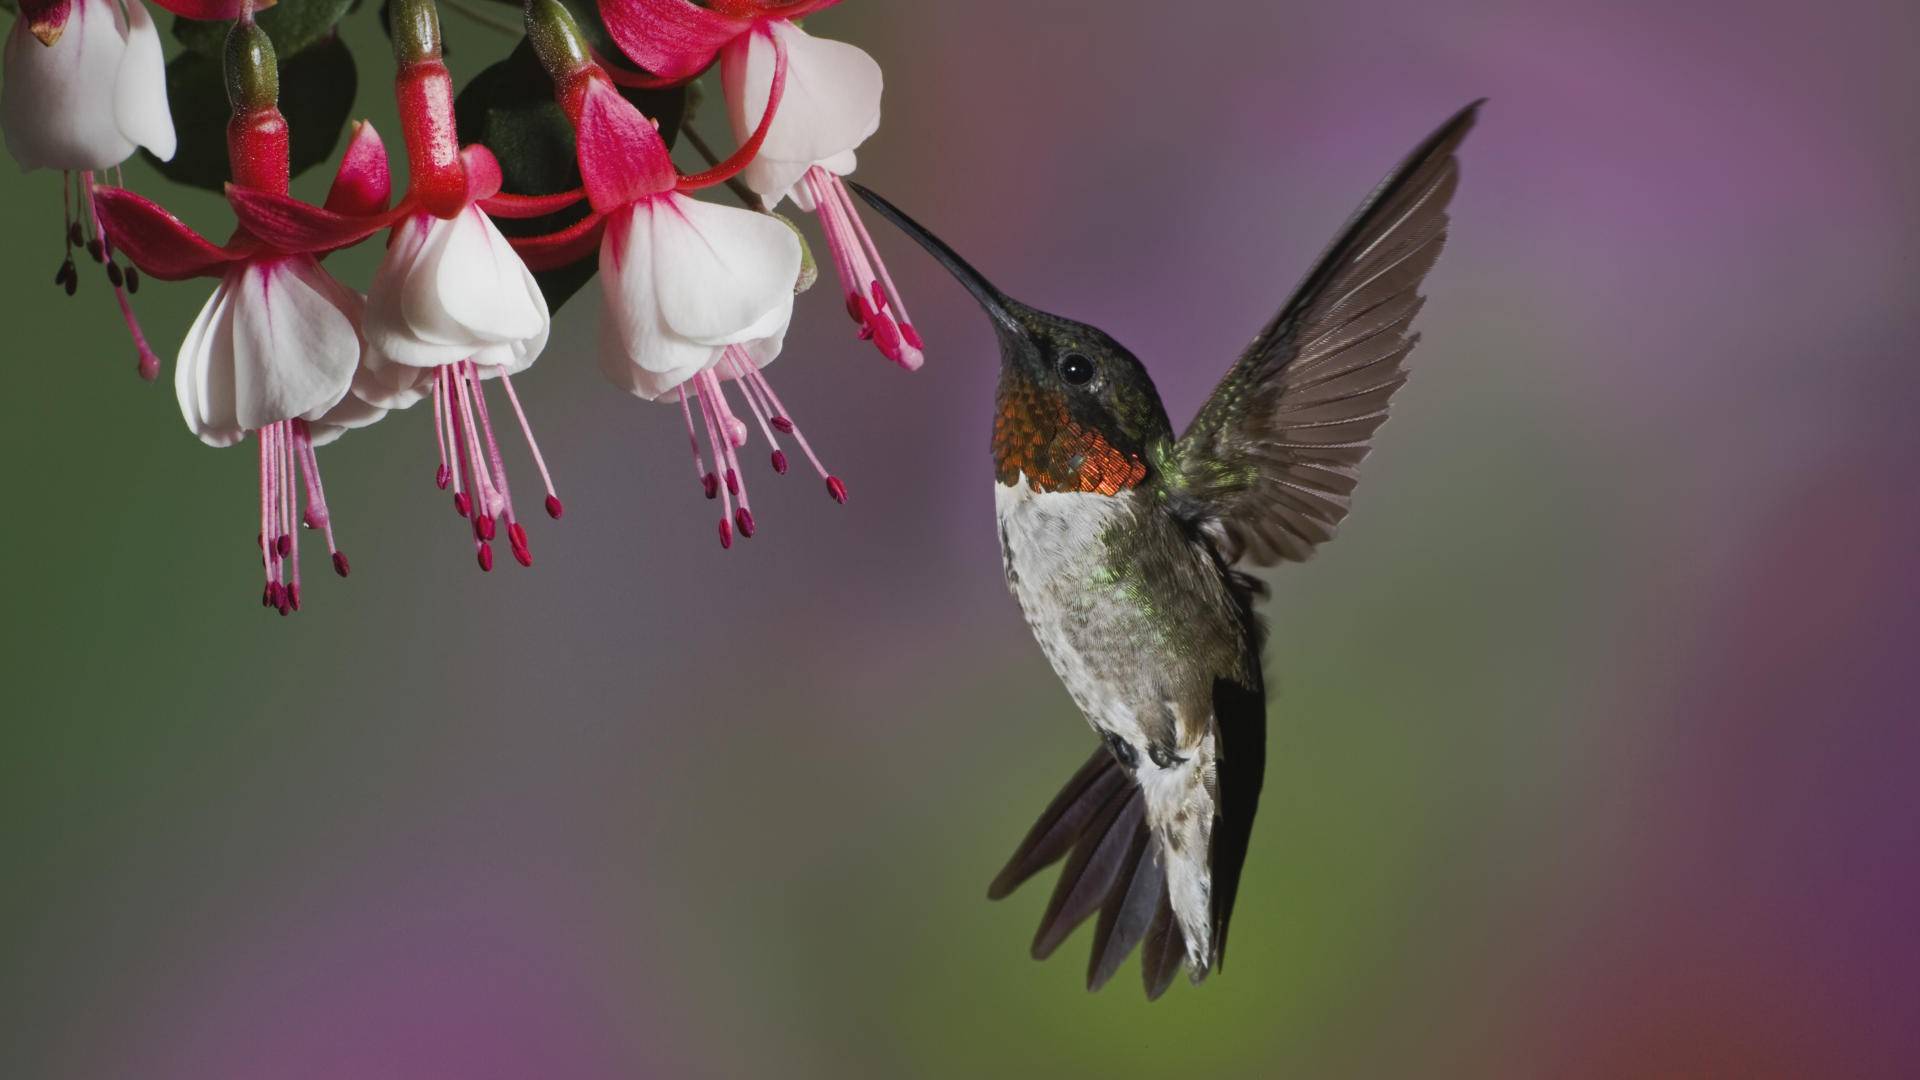 Peru Hummingbirds 1920×1080 Wallpaper 1632233